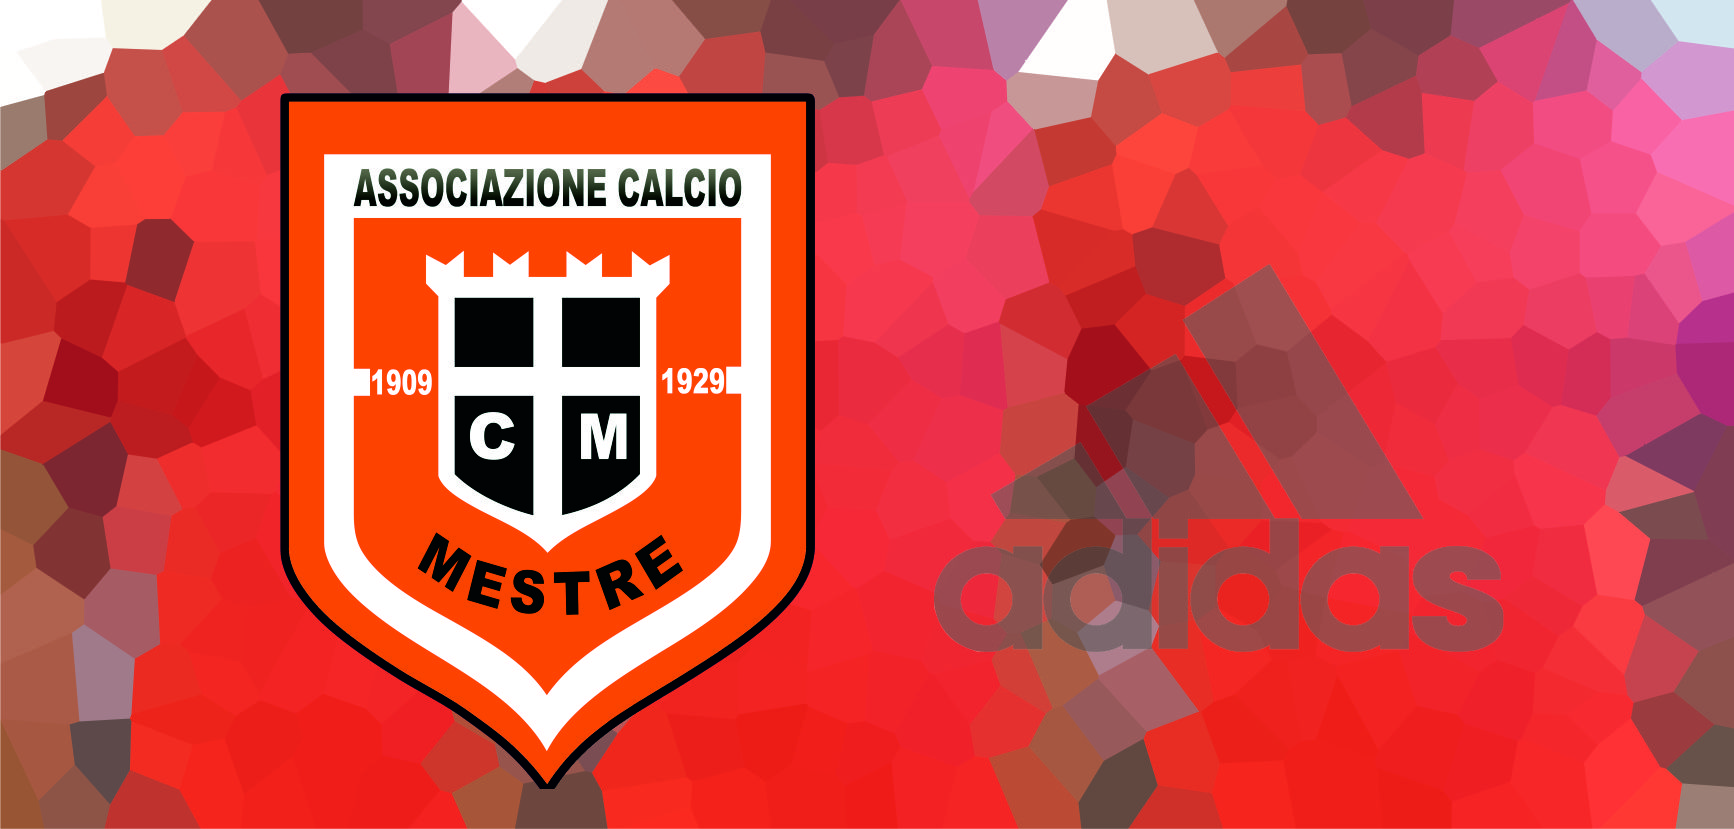 AC MESTRE: DOMANI 13 SETTEMBRE, LA PRESENTAZIONE UFFICIALE DELLA DIVISA  ADIDAS 2019/20 - Associazione Calcio Mestre - sito ufficiale